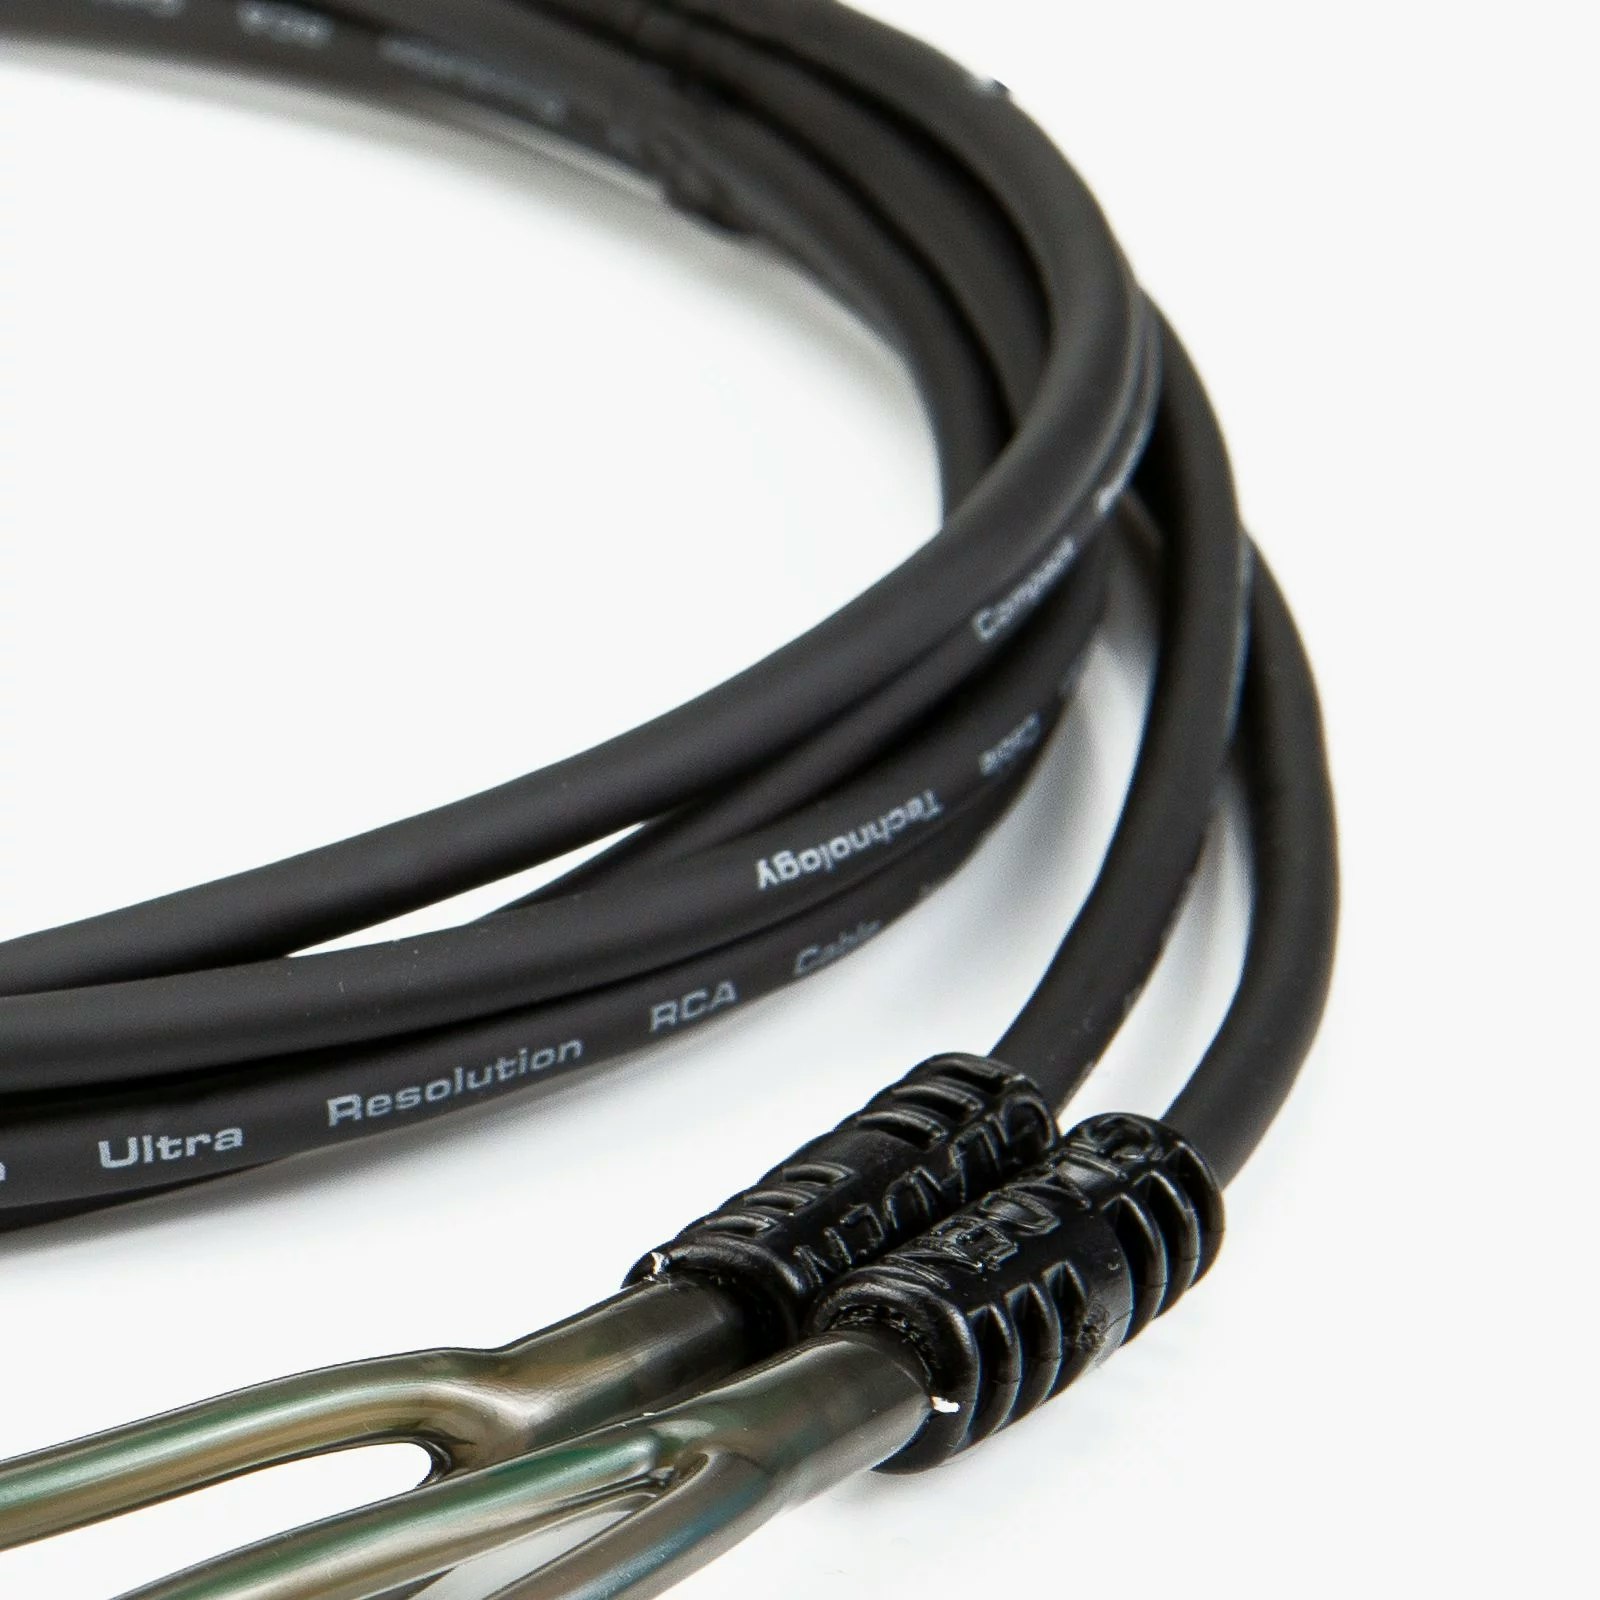 Gladen ECO 5m RCA-kabel